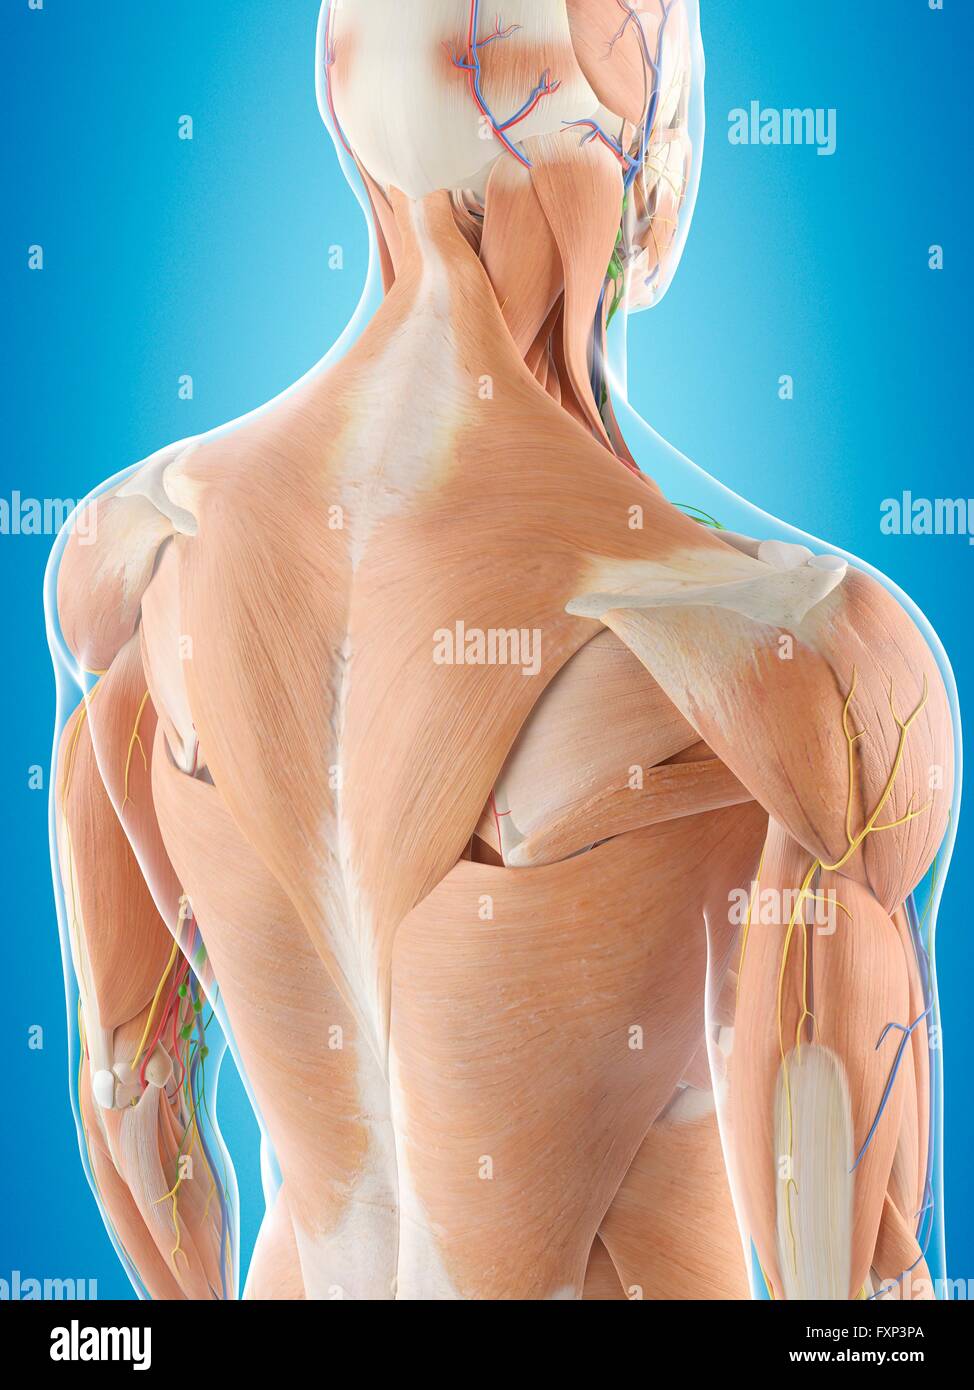 Anatomia espalda humana fotografías e imágenes de alta resolución